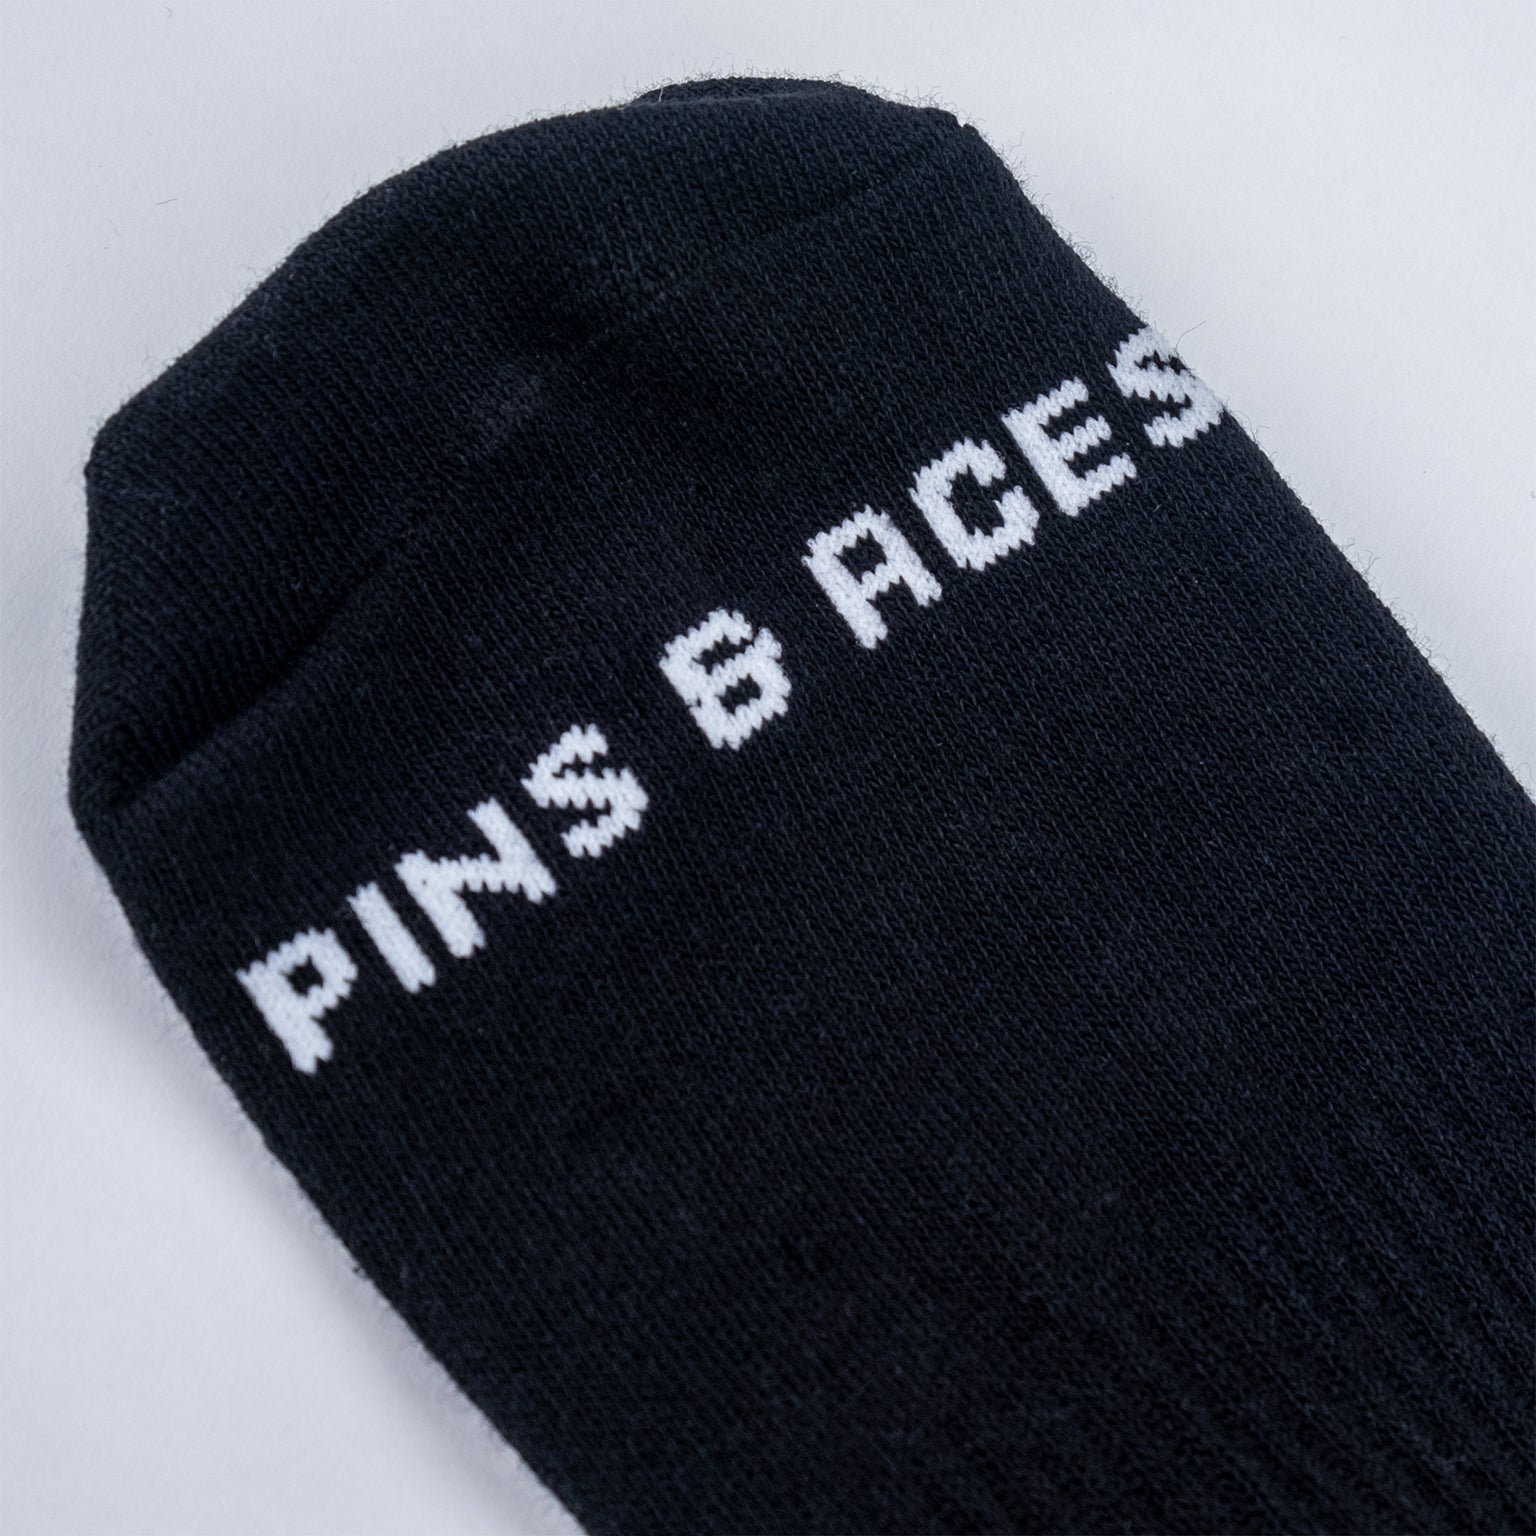 Pins Socks- Crew